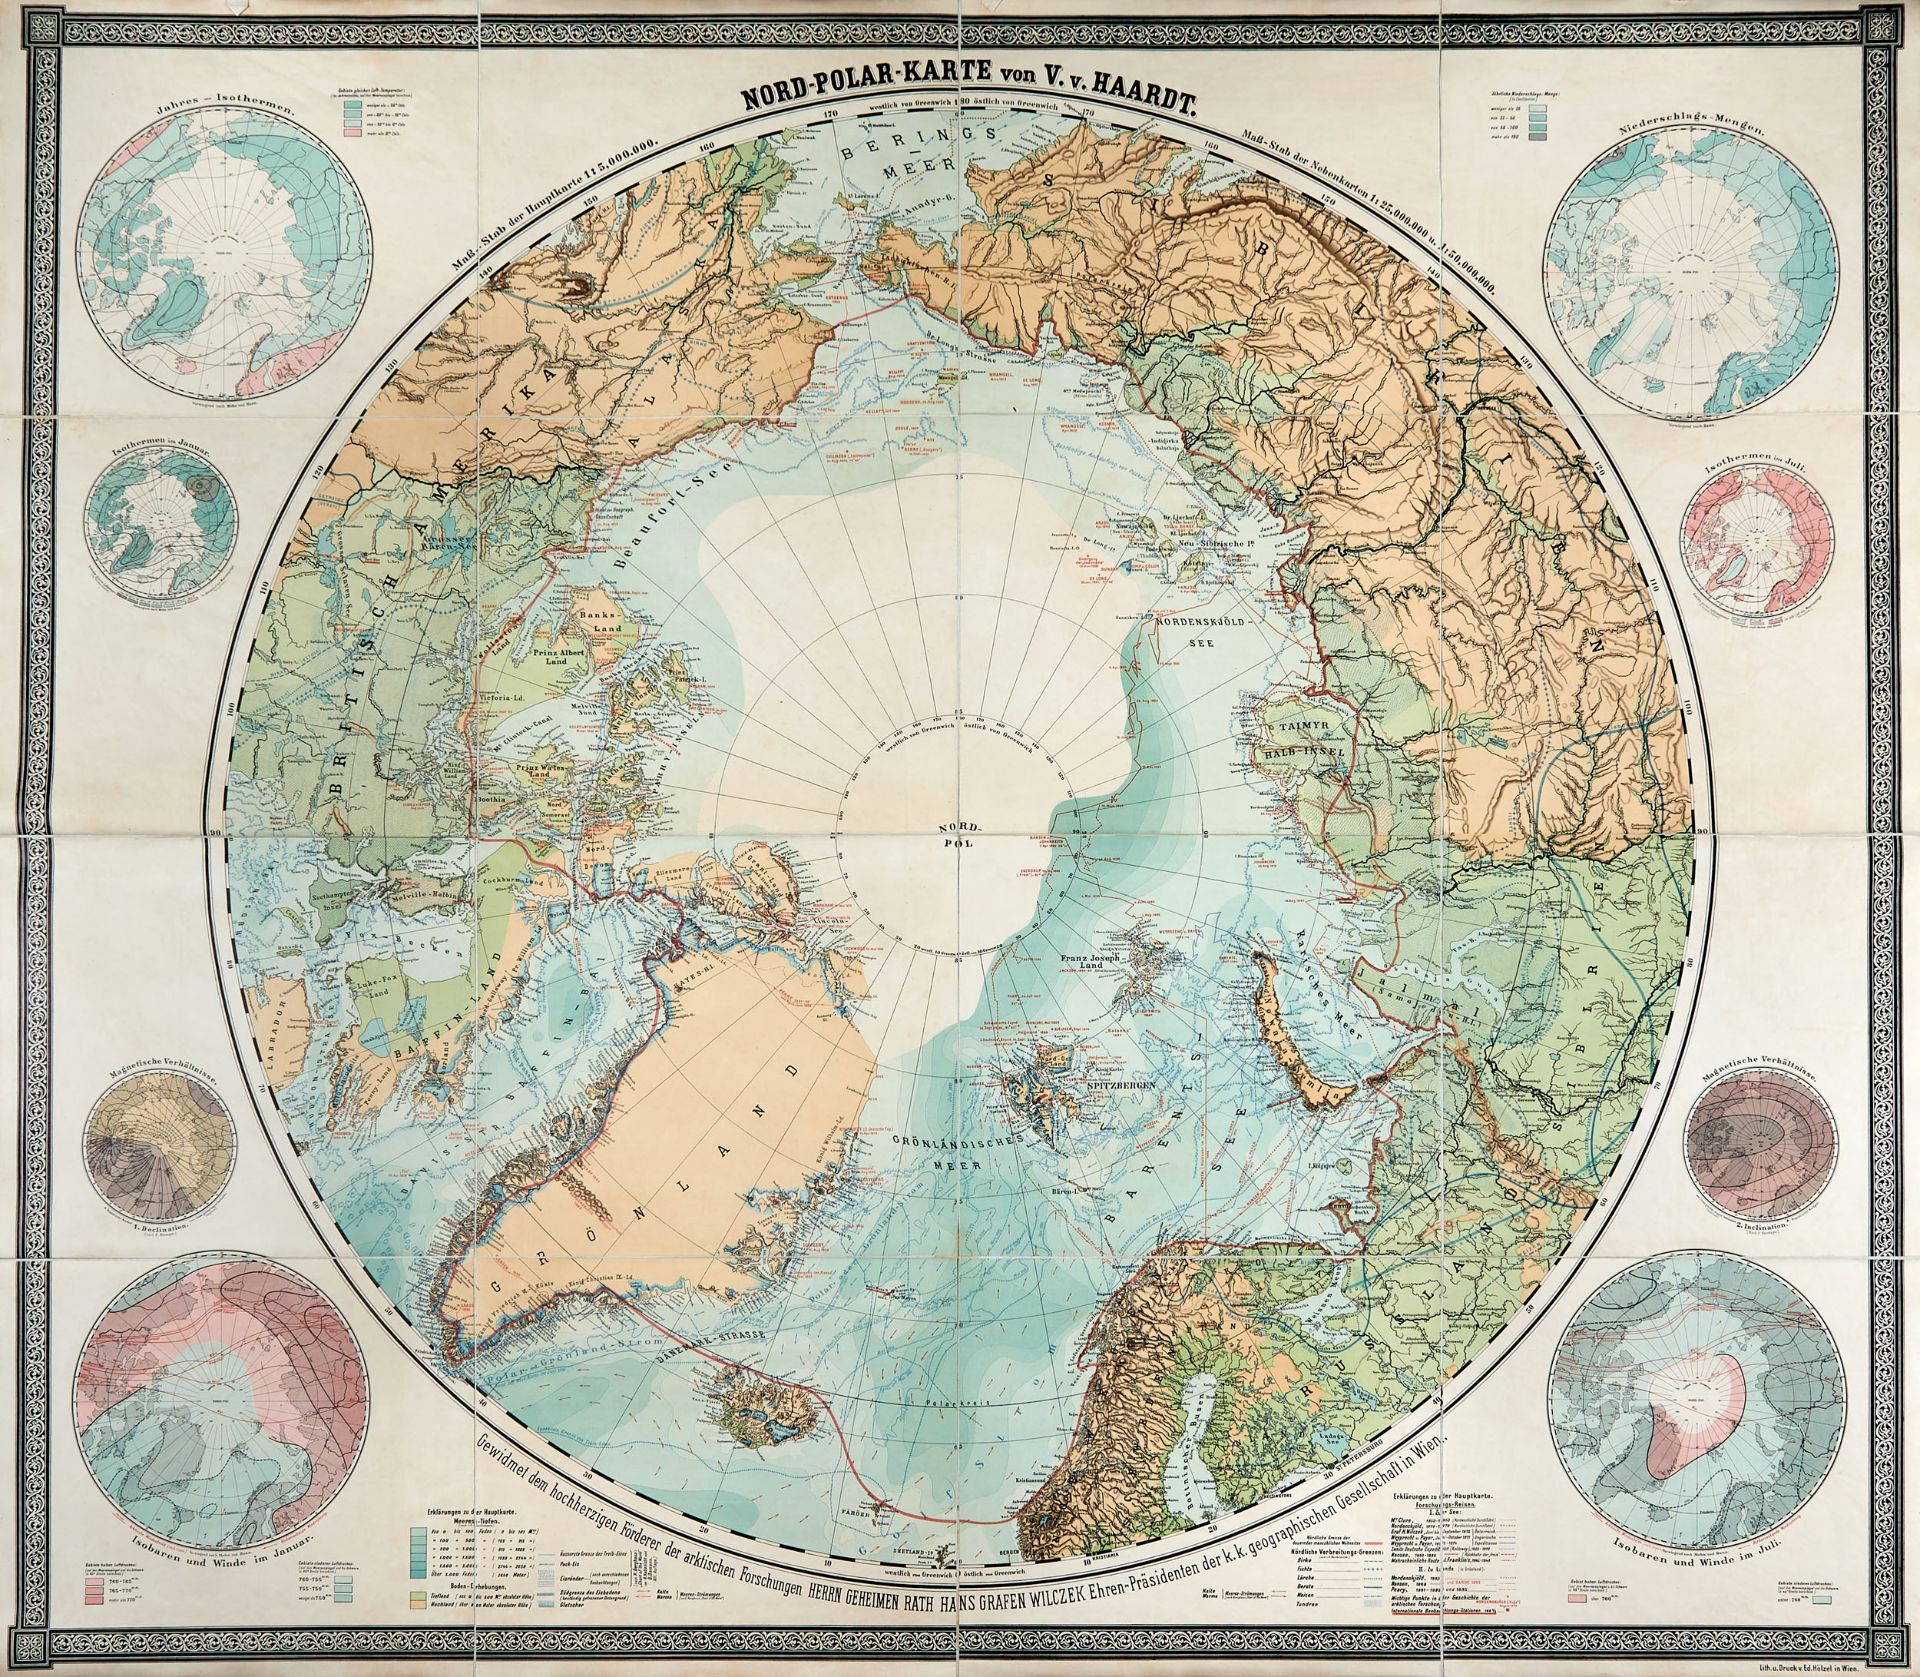 HAARDT, Vinzenz von (1843-1914). Nord Polar Karte. Vienna: Holzel, [1895].